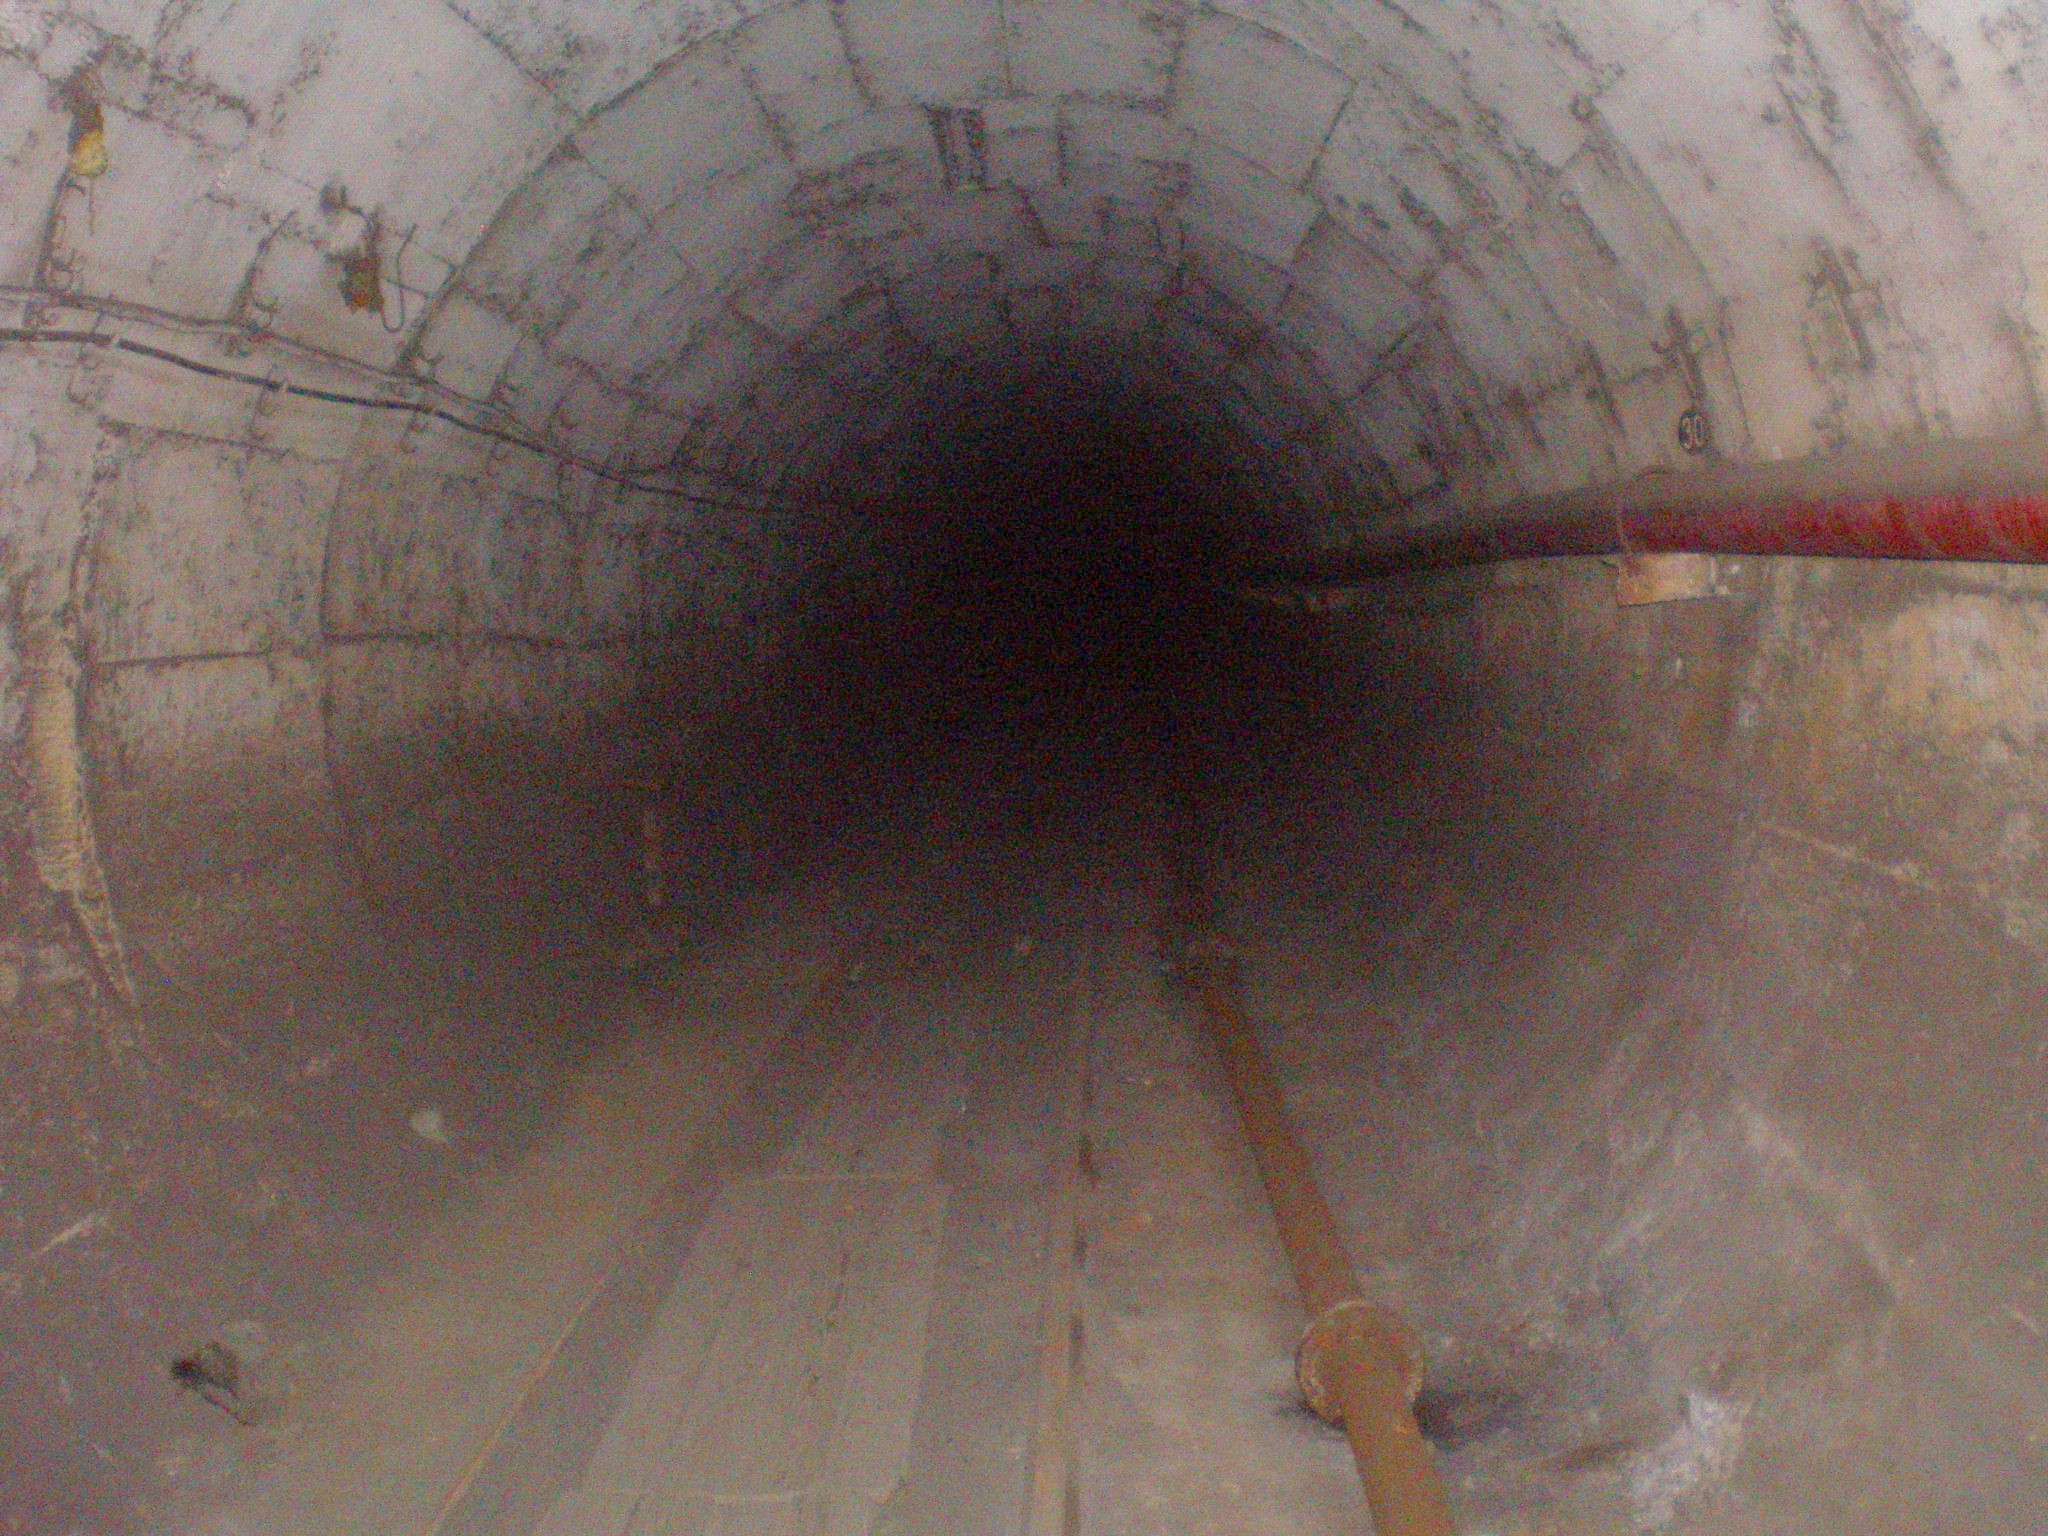 Узкоколейная железная дорога на шахте «Подмосковная»  — фотографии, сделанные в 2009 году (часть 6)